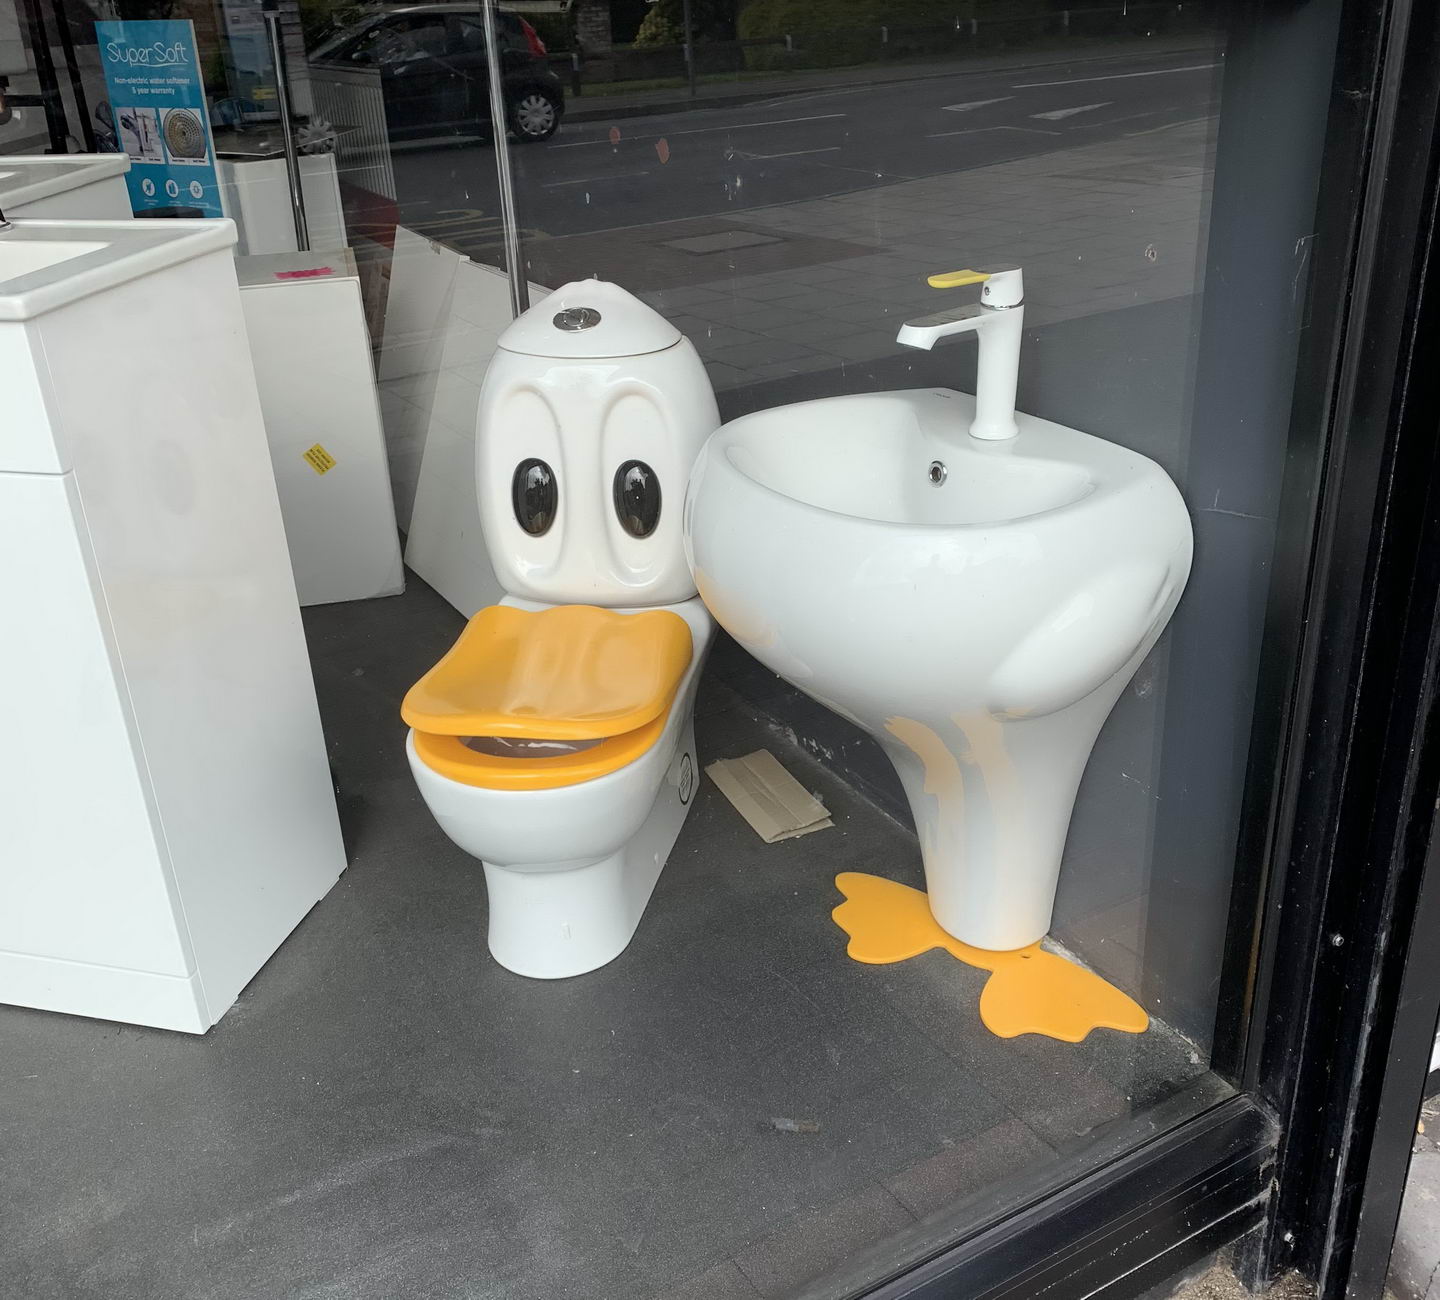 funny meme of a toilet seat - Super Soft ile